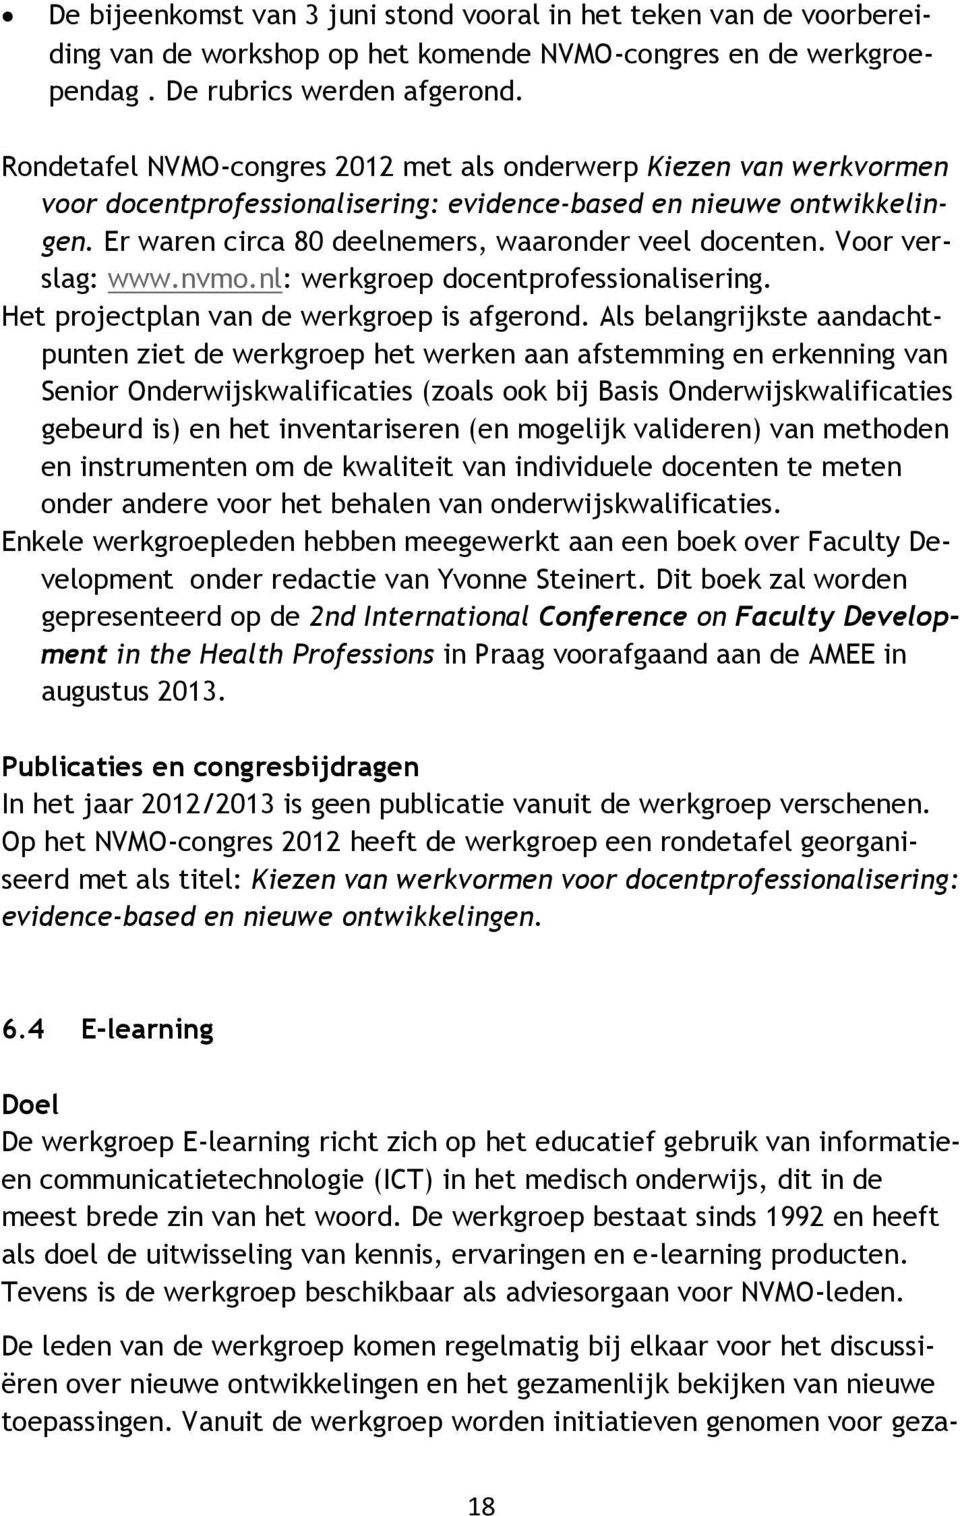 Voor verslag: www.nvmo.nl: werkgroep docentprofessionalisering. Het projectplan van de werkgroep is afgerond.